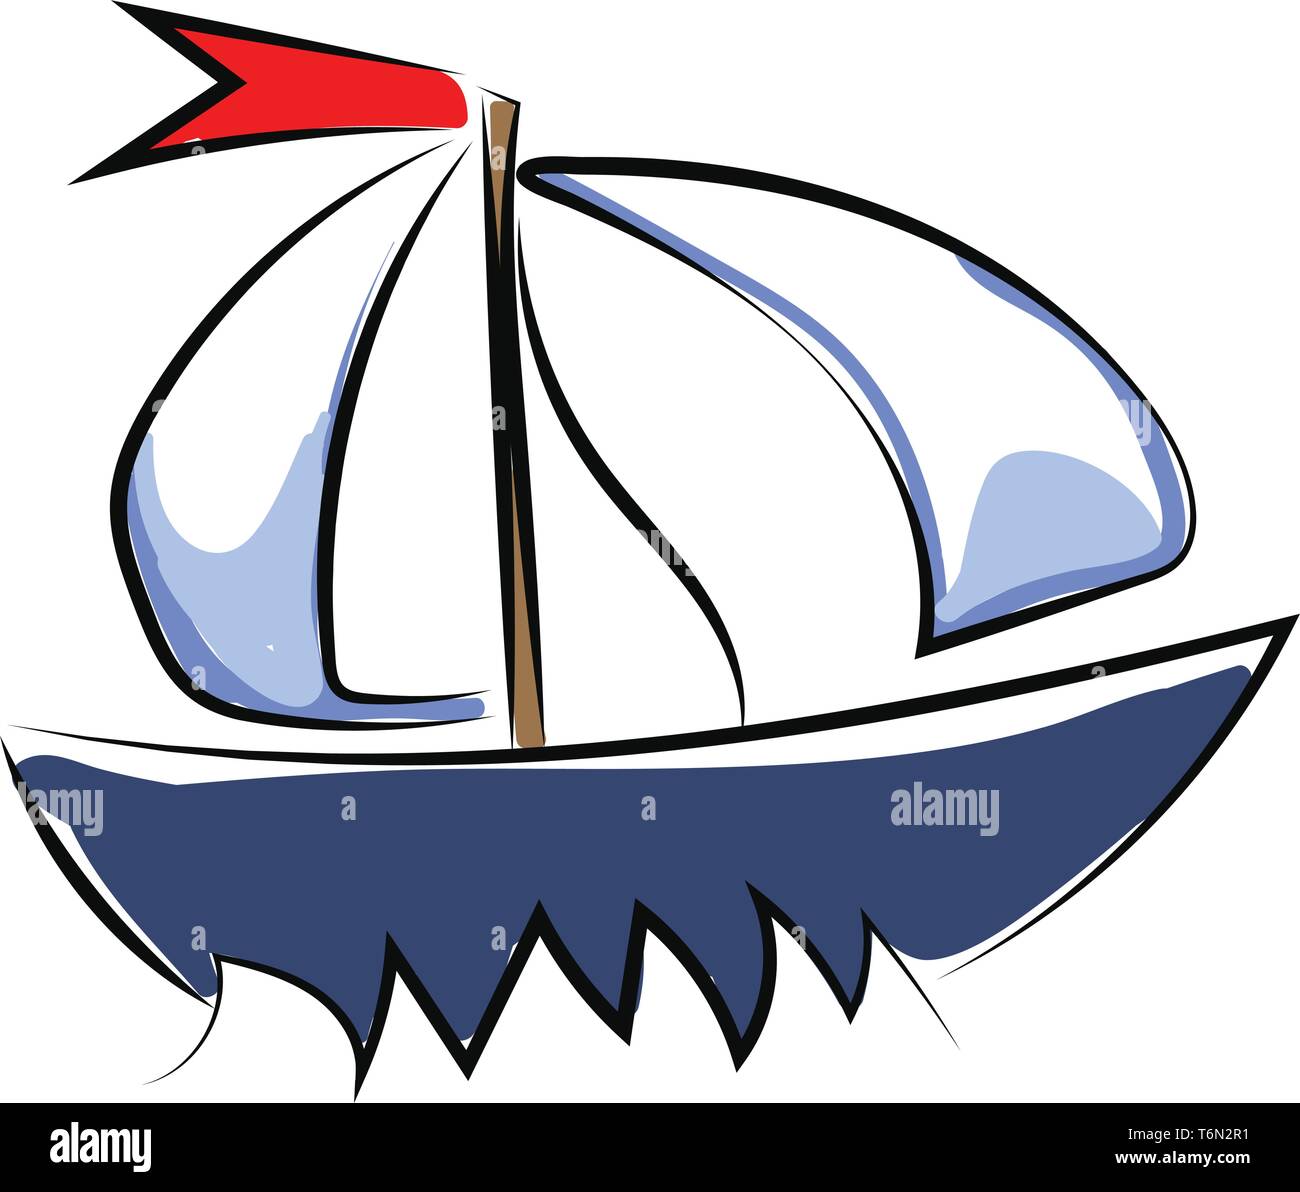 Un beau yacht de couleur bleue avec la grand-voile et le foc et un drapeau  de couleur rouge qui se déploie dans les voiles du vent à travers la mer de  couleur